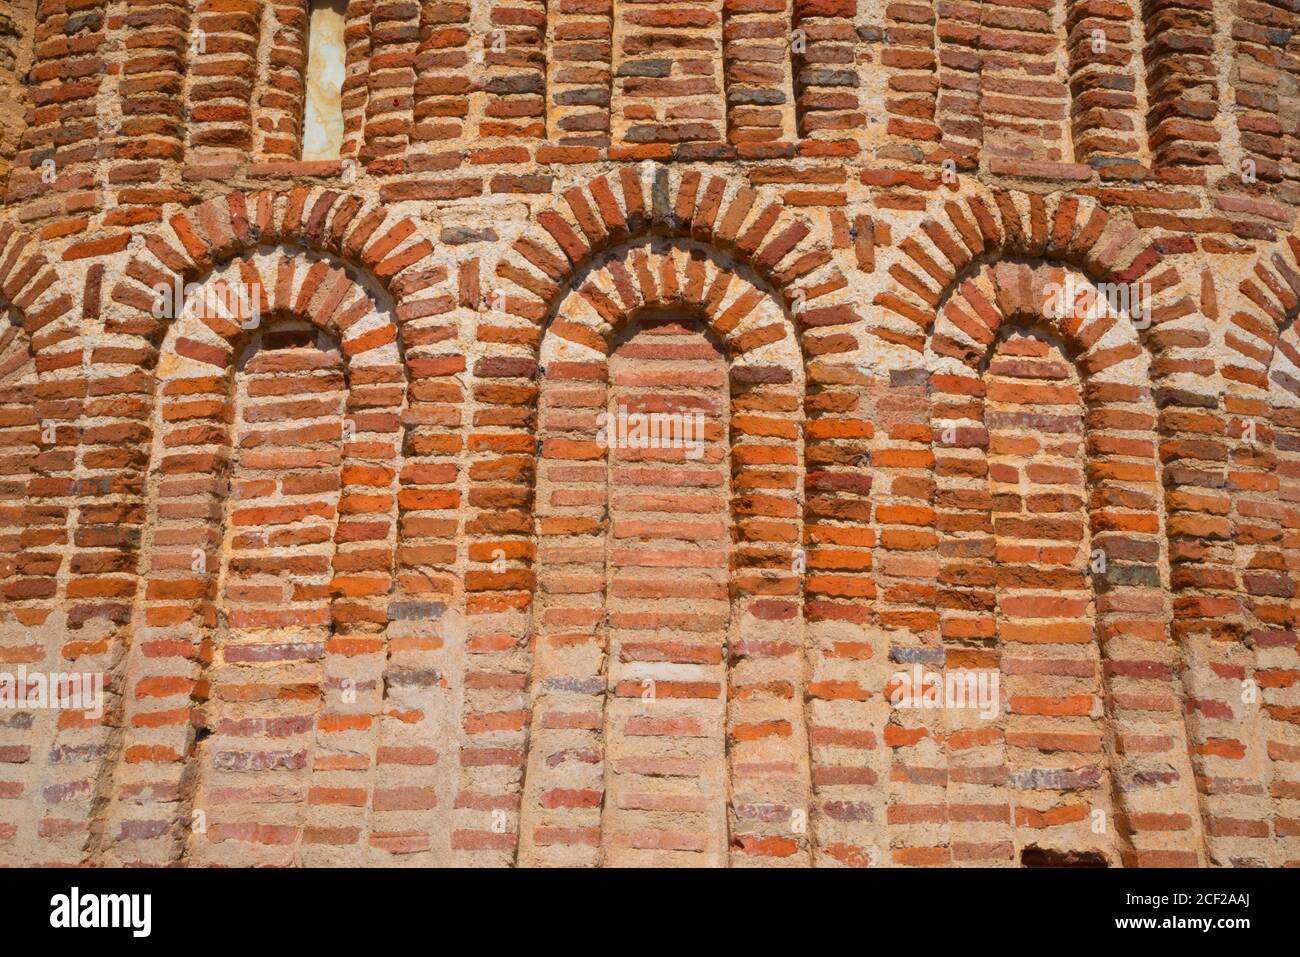 Ábside de la iglesia de Santa María de la Asunción, vista cercana. Cubillo de Uceda, provincia de Guadalajara, Castilla la Mancha, España. Foto de stock